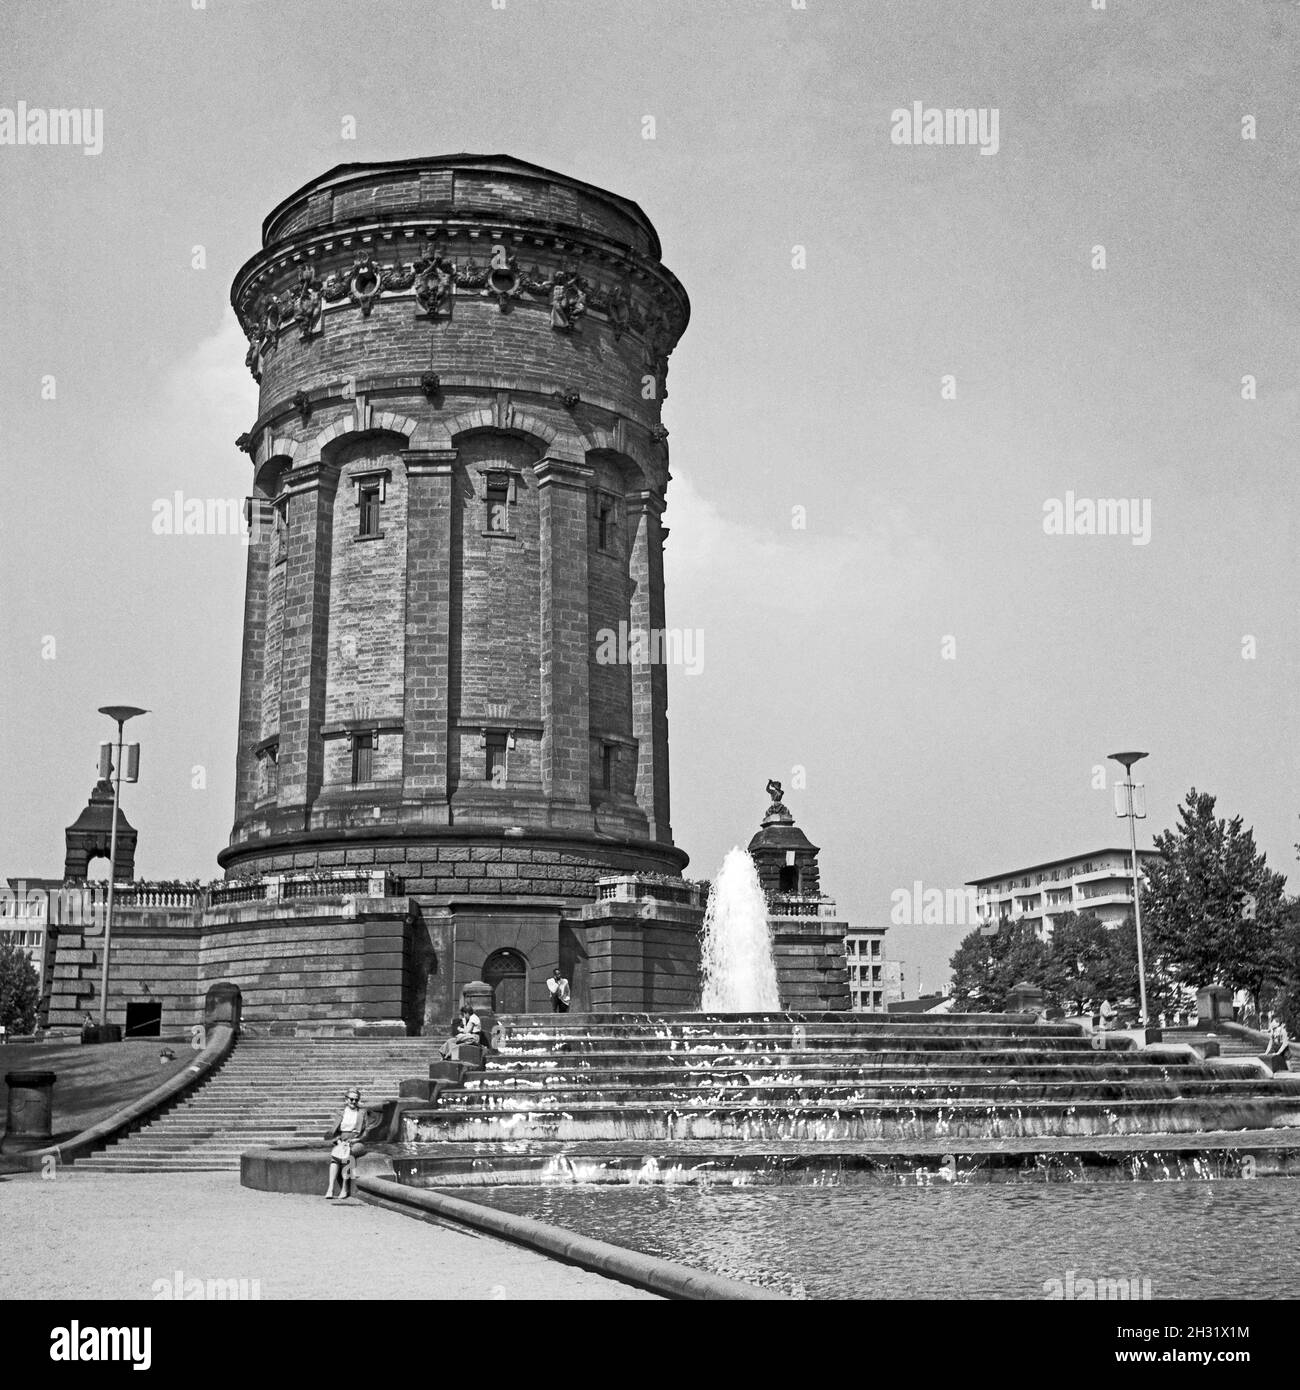 Der Wasserturm à Mannheim, Allemagne 1957.Tour d'eau de Mannheim, Allemagne 1957. Banque D'Images